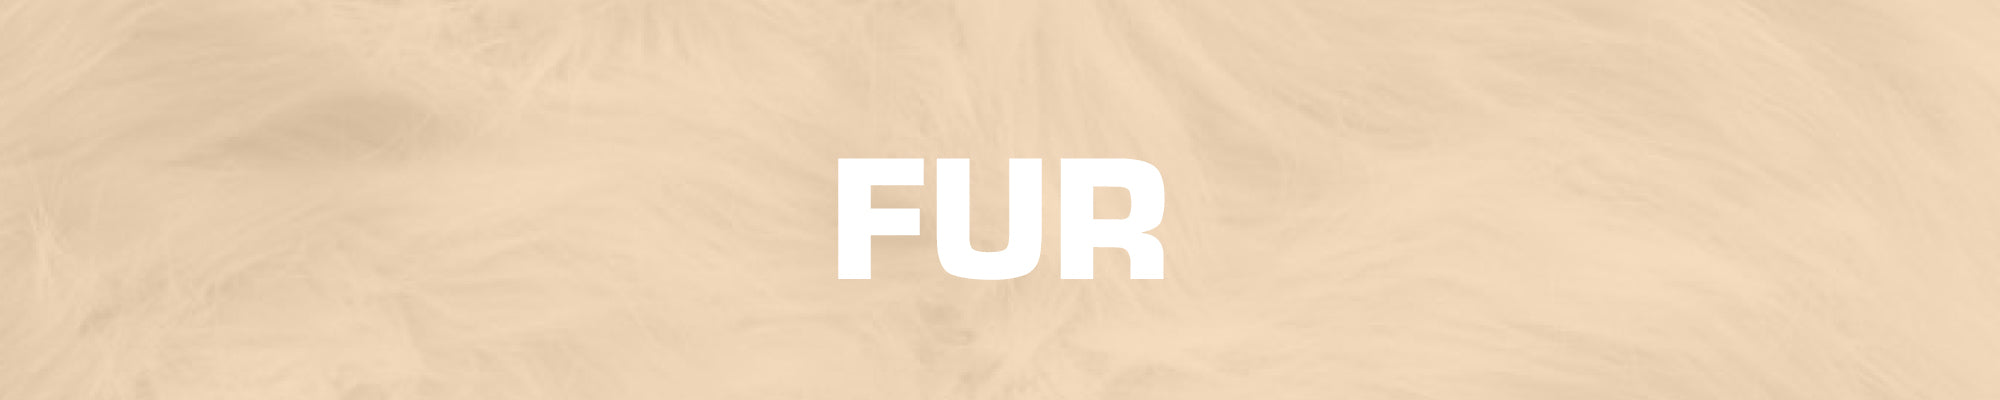 All Fur